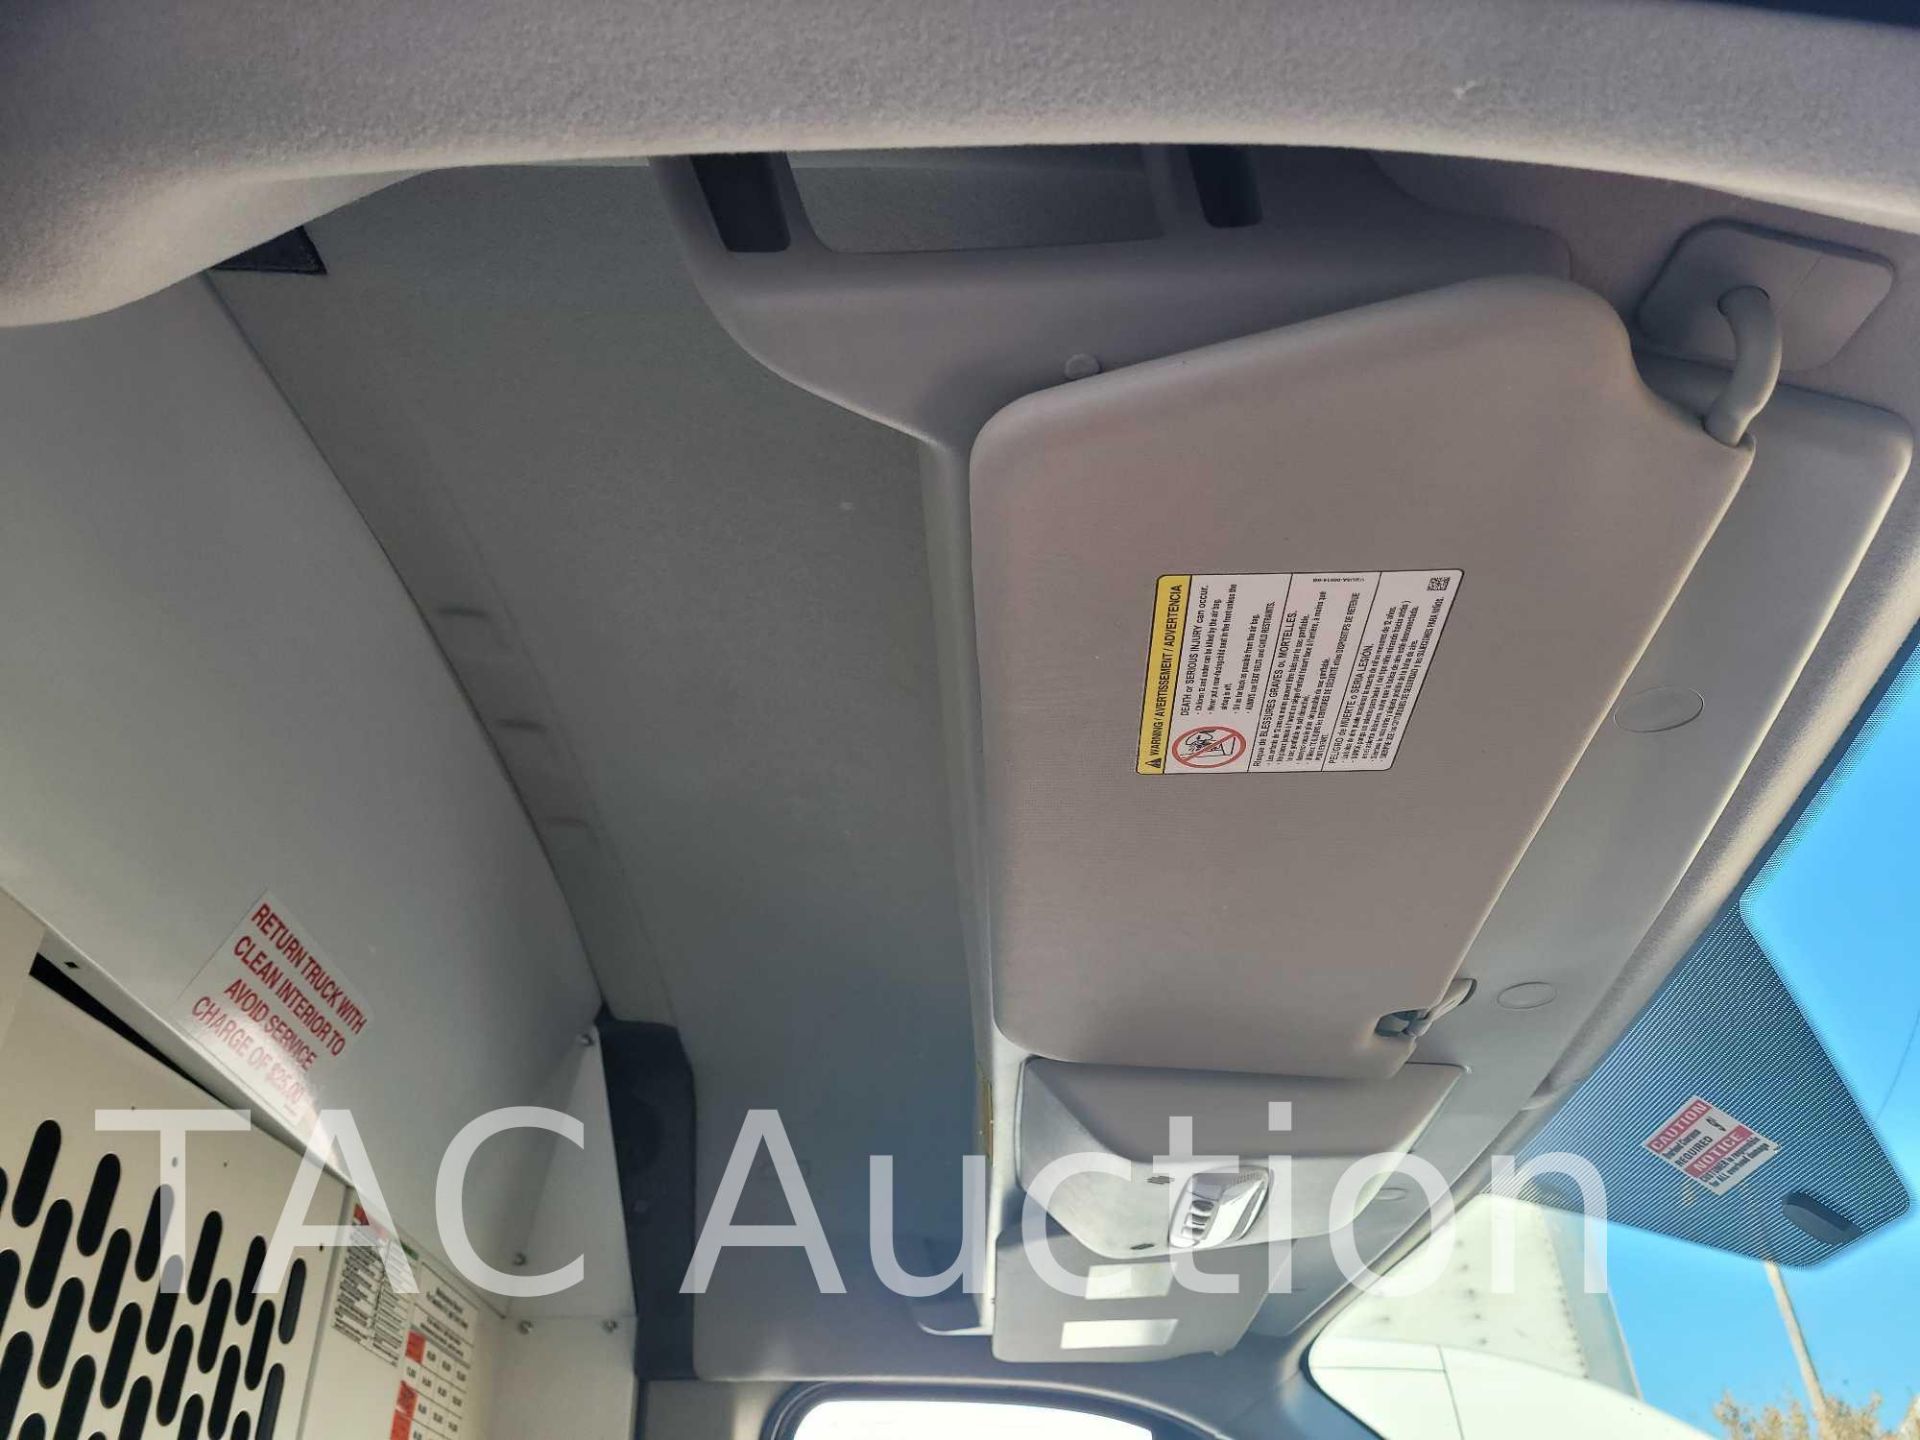 2019 Ford Transit 150 Cargo Van - Image 22 of 44